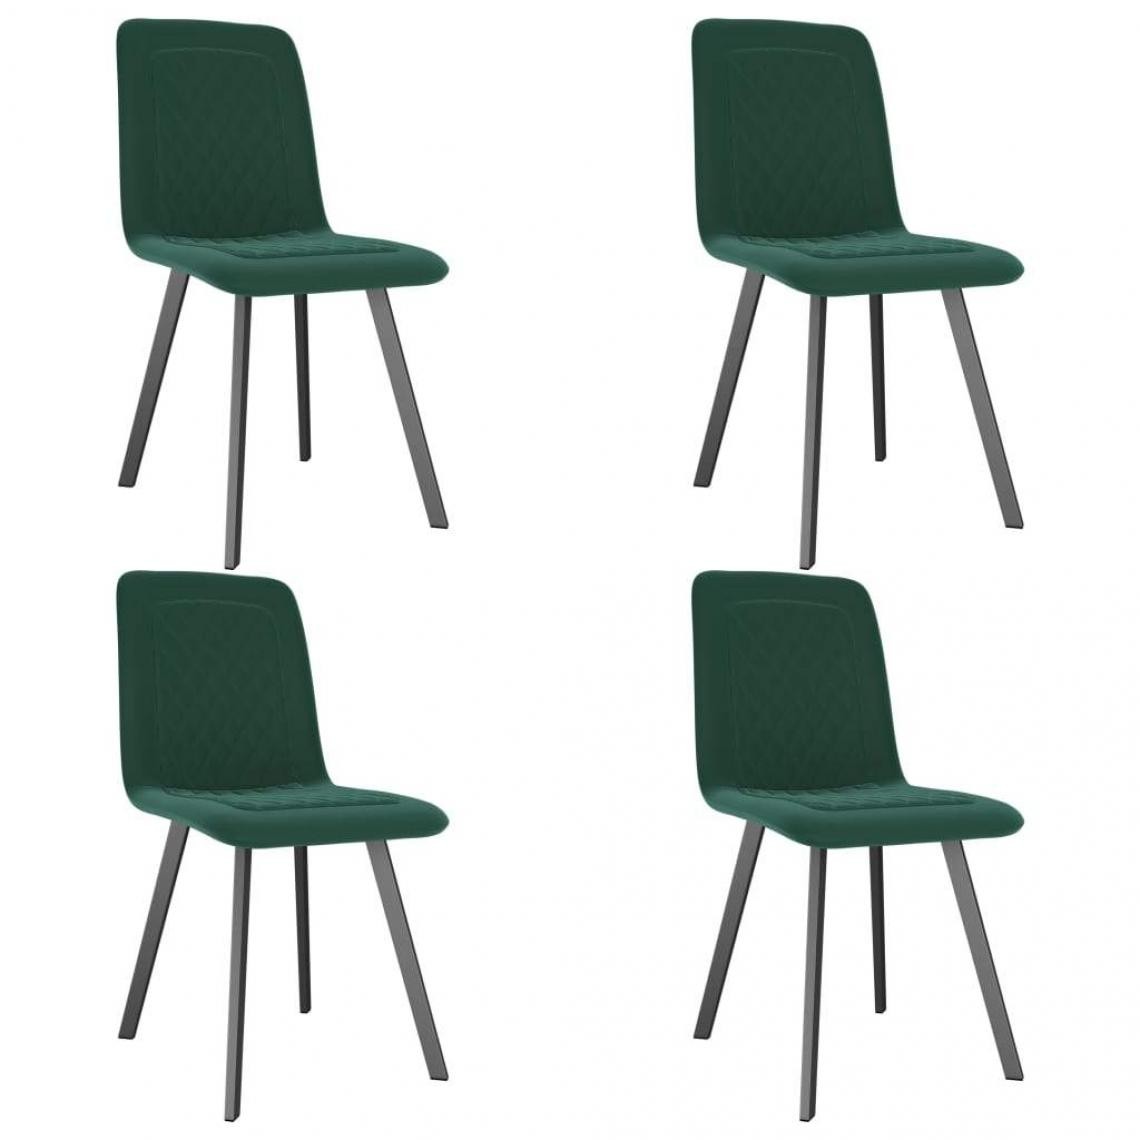 Decoshop26 - Lot de 4 chaises de salle à manger cuisine design moderne velours vert CDS022067 - Chaises